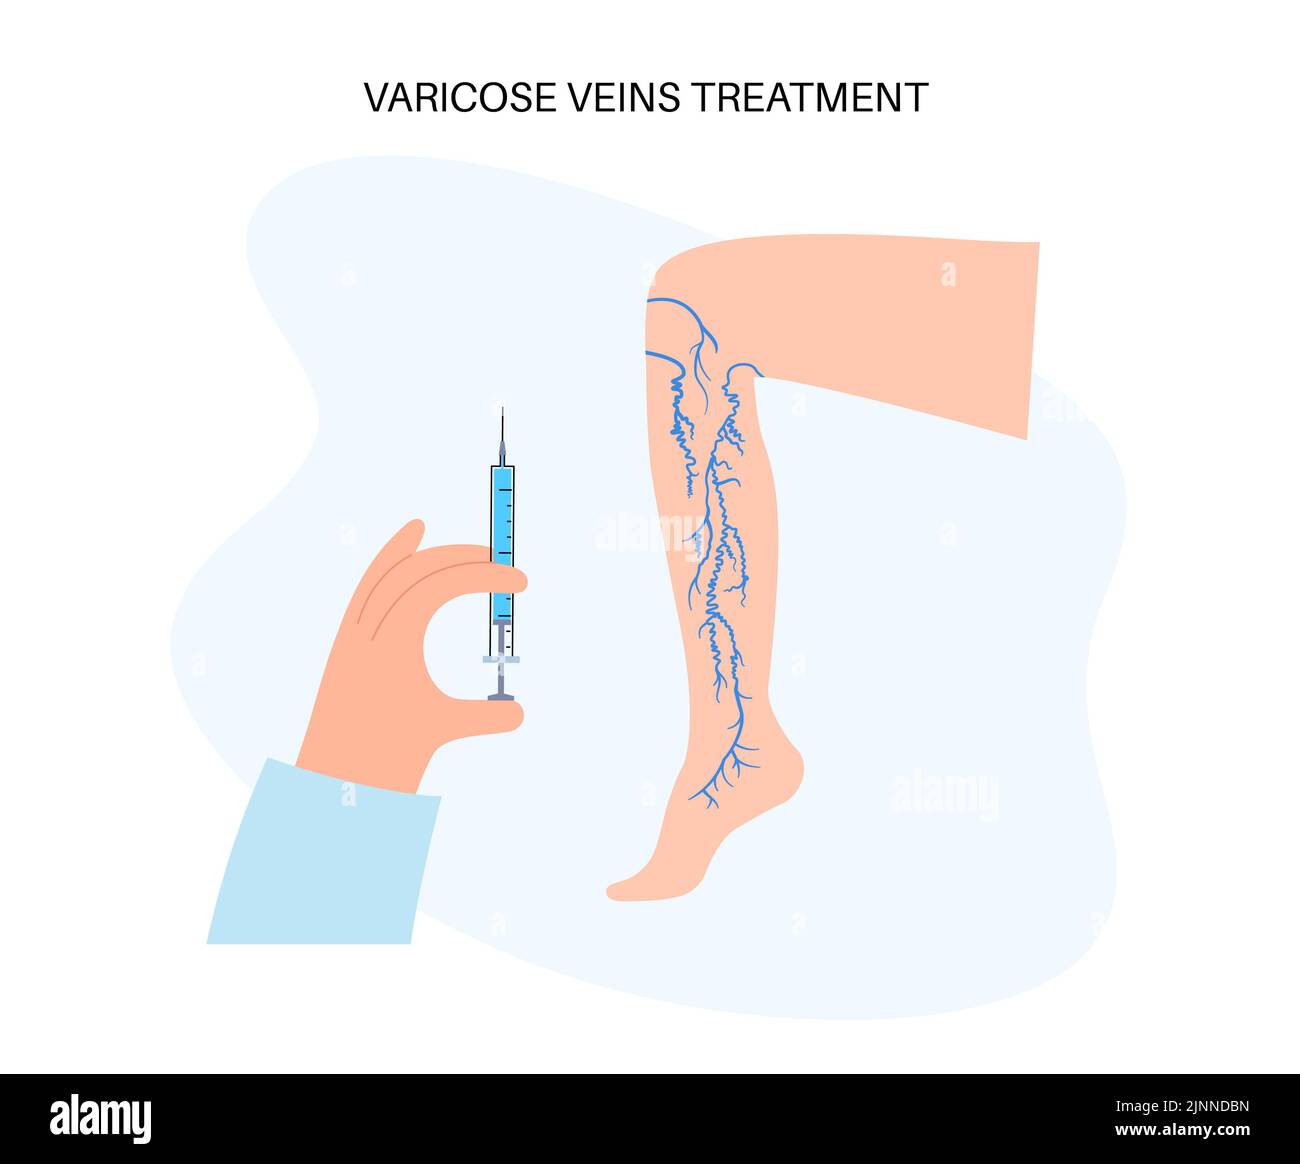 Tratamiento de venas varicosas, ilustración. Foto de stock